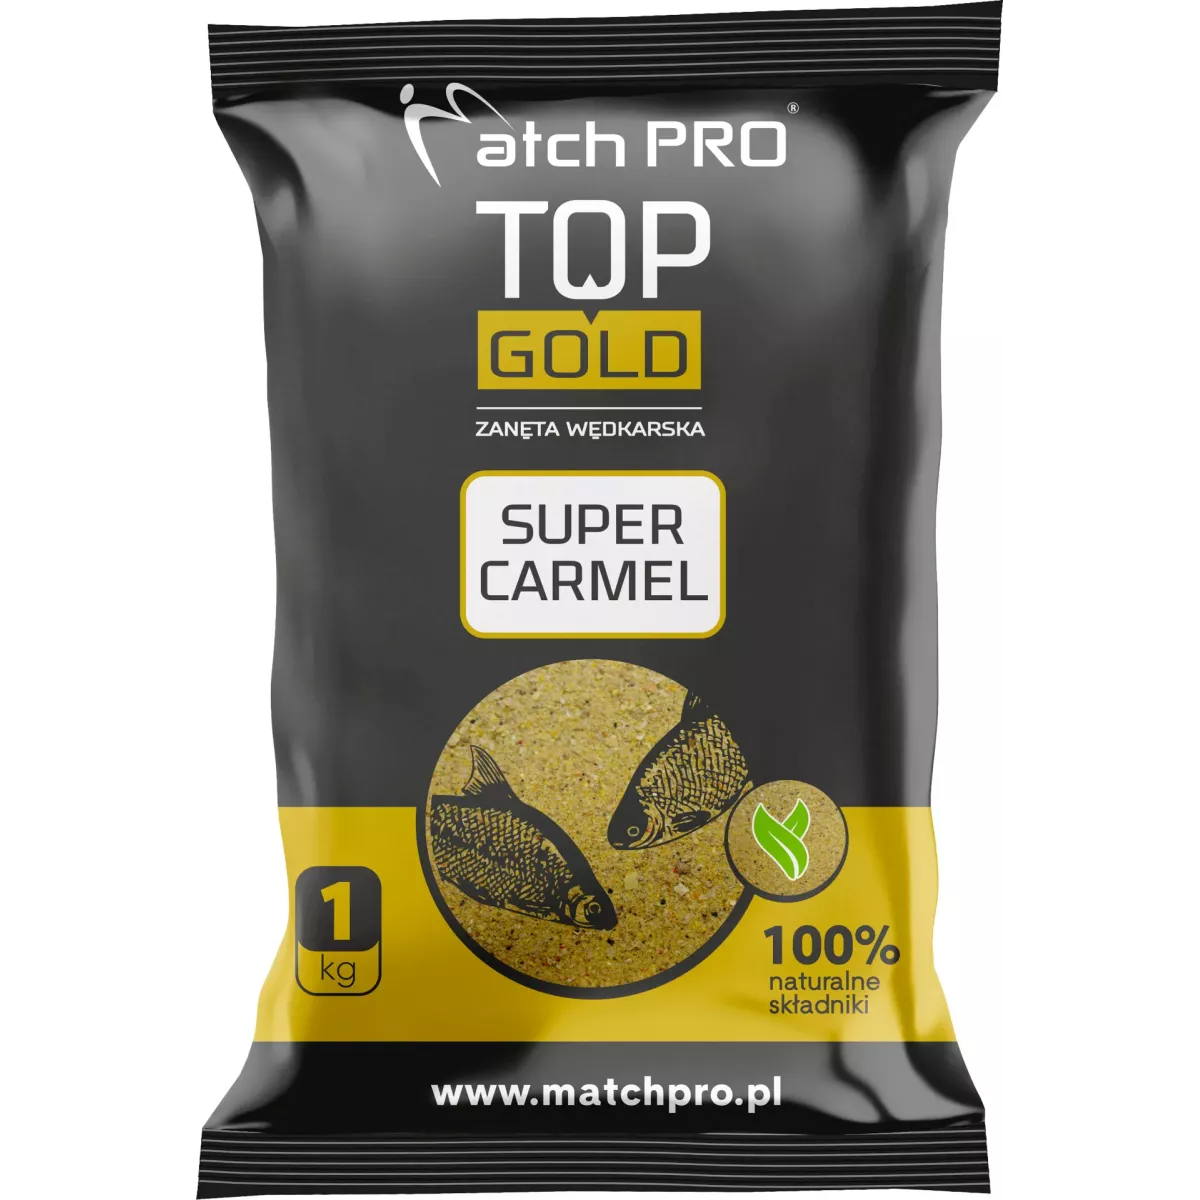 Zanęta MatchPro Top Gold 1kg - SUPER CARMEL